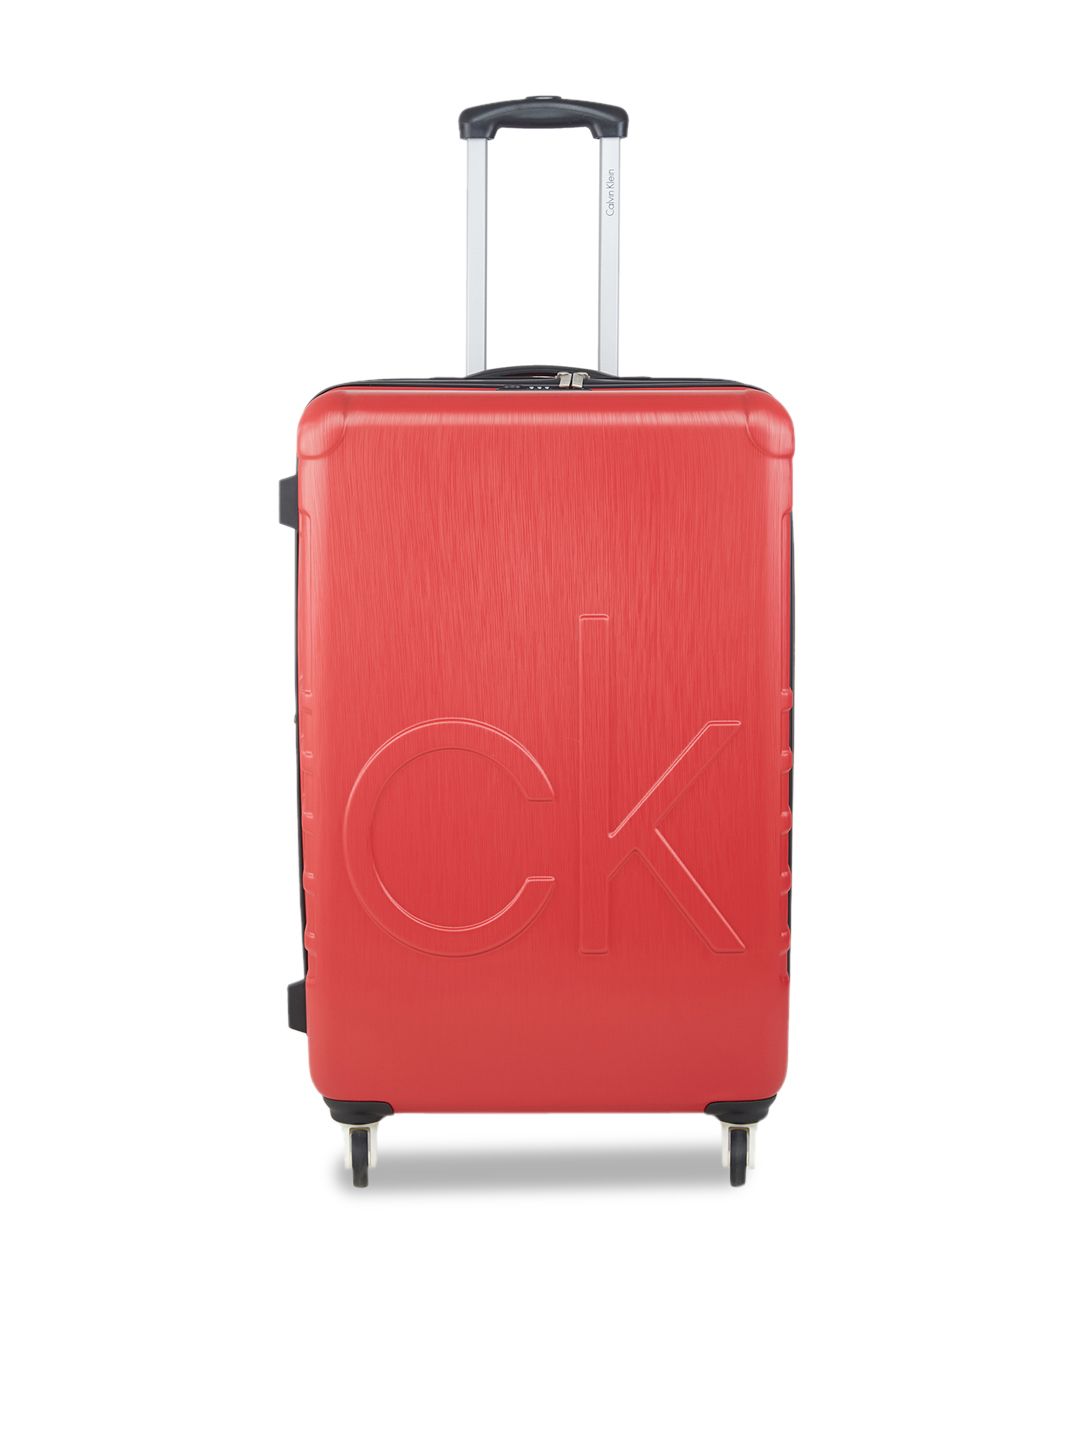 Calvin Klein Ck Logo Range Red & White Hard Large Suitcase Price in India